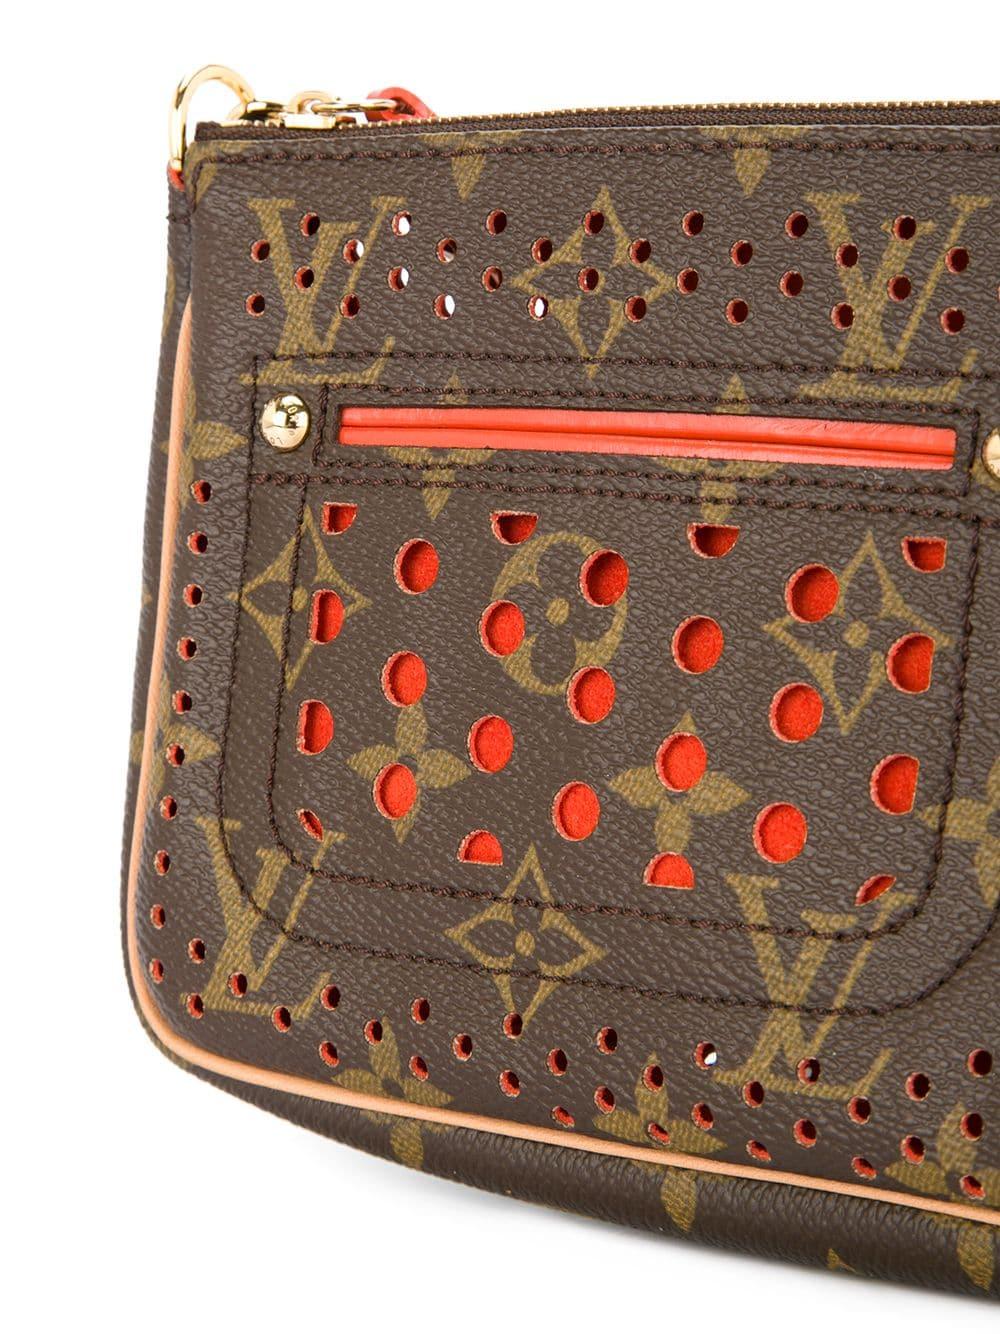 Louis Vuitton hole-punch purse  Louis vuitton, Purses, Vuitton